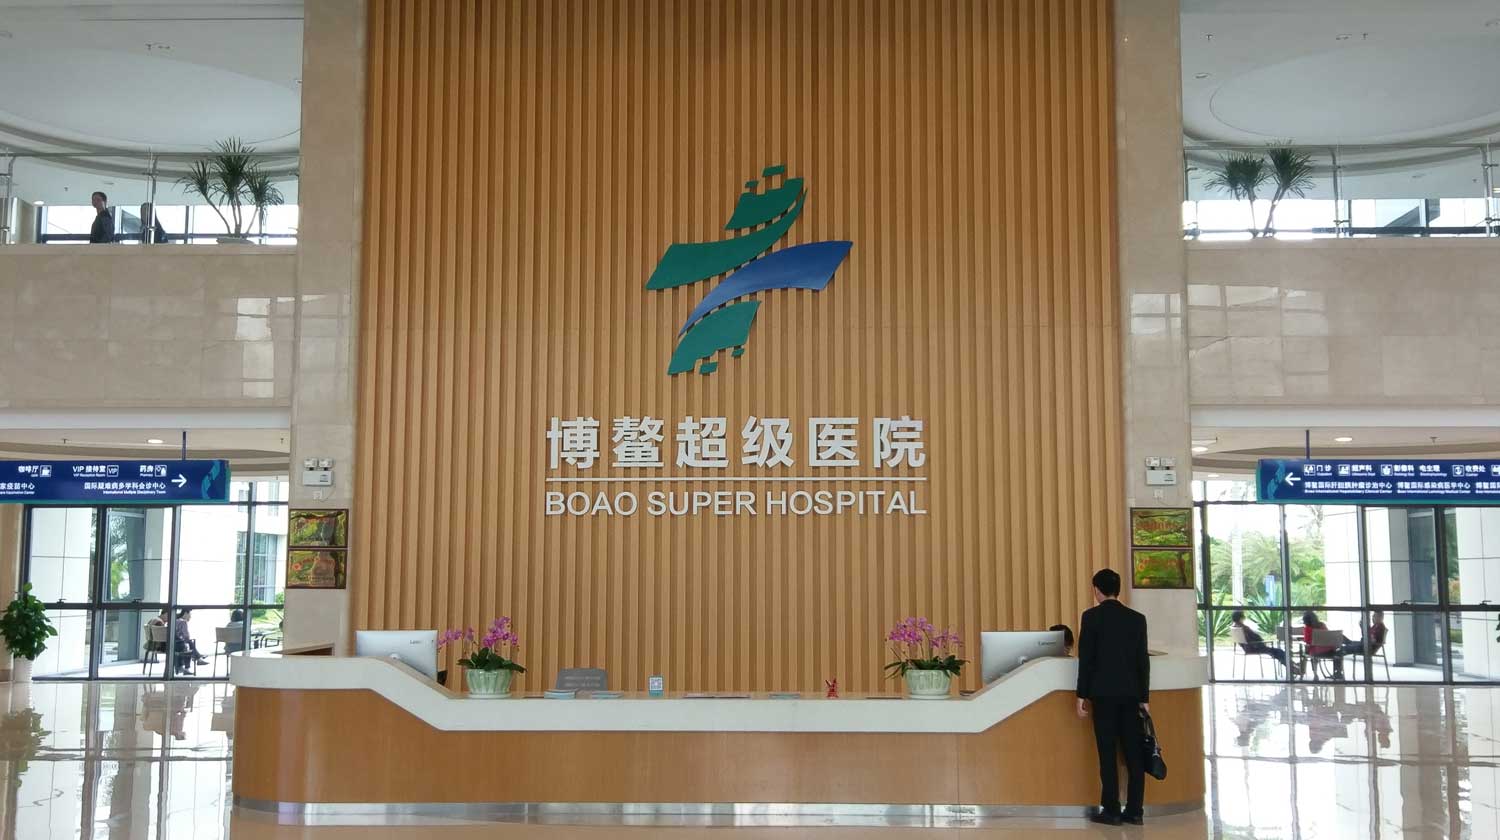 相片: 博鰲超級醫院